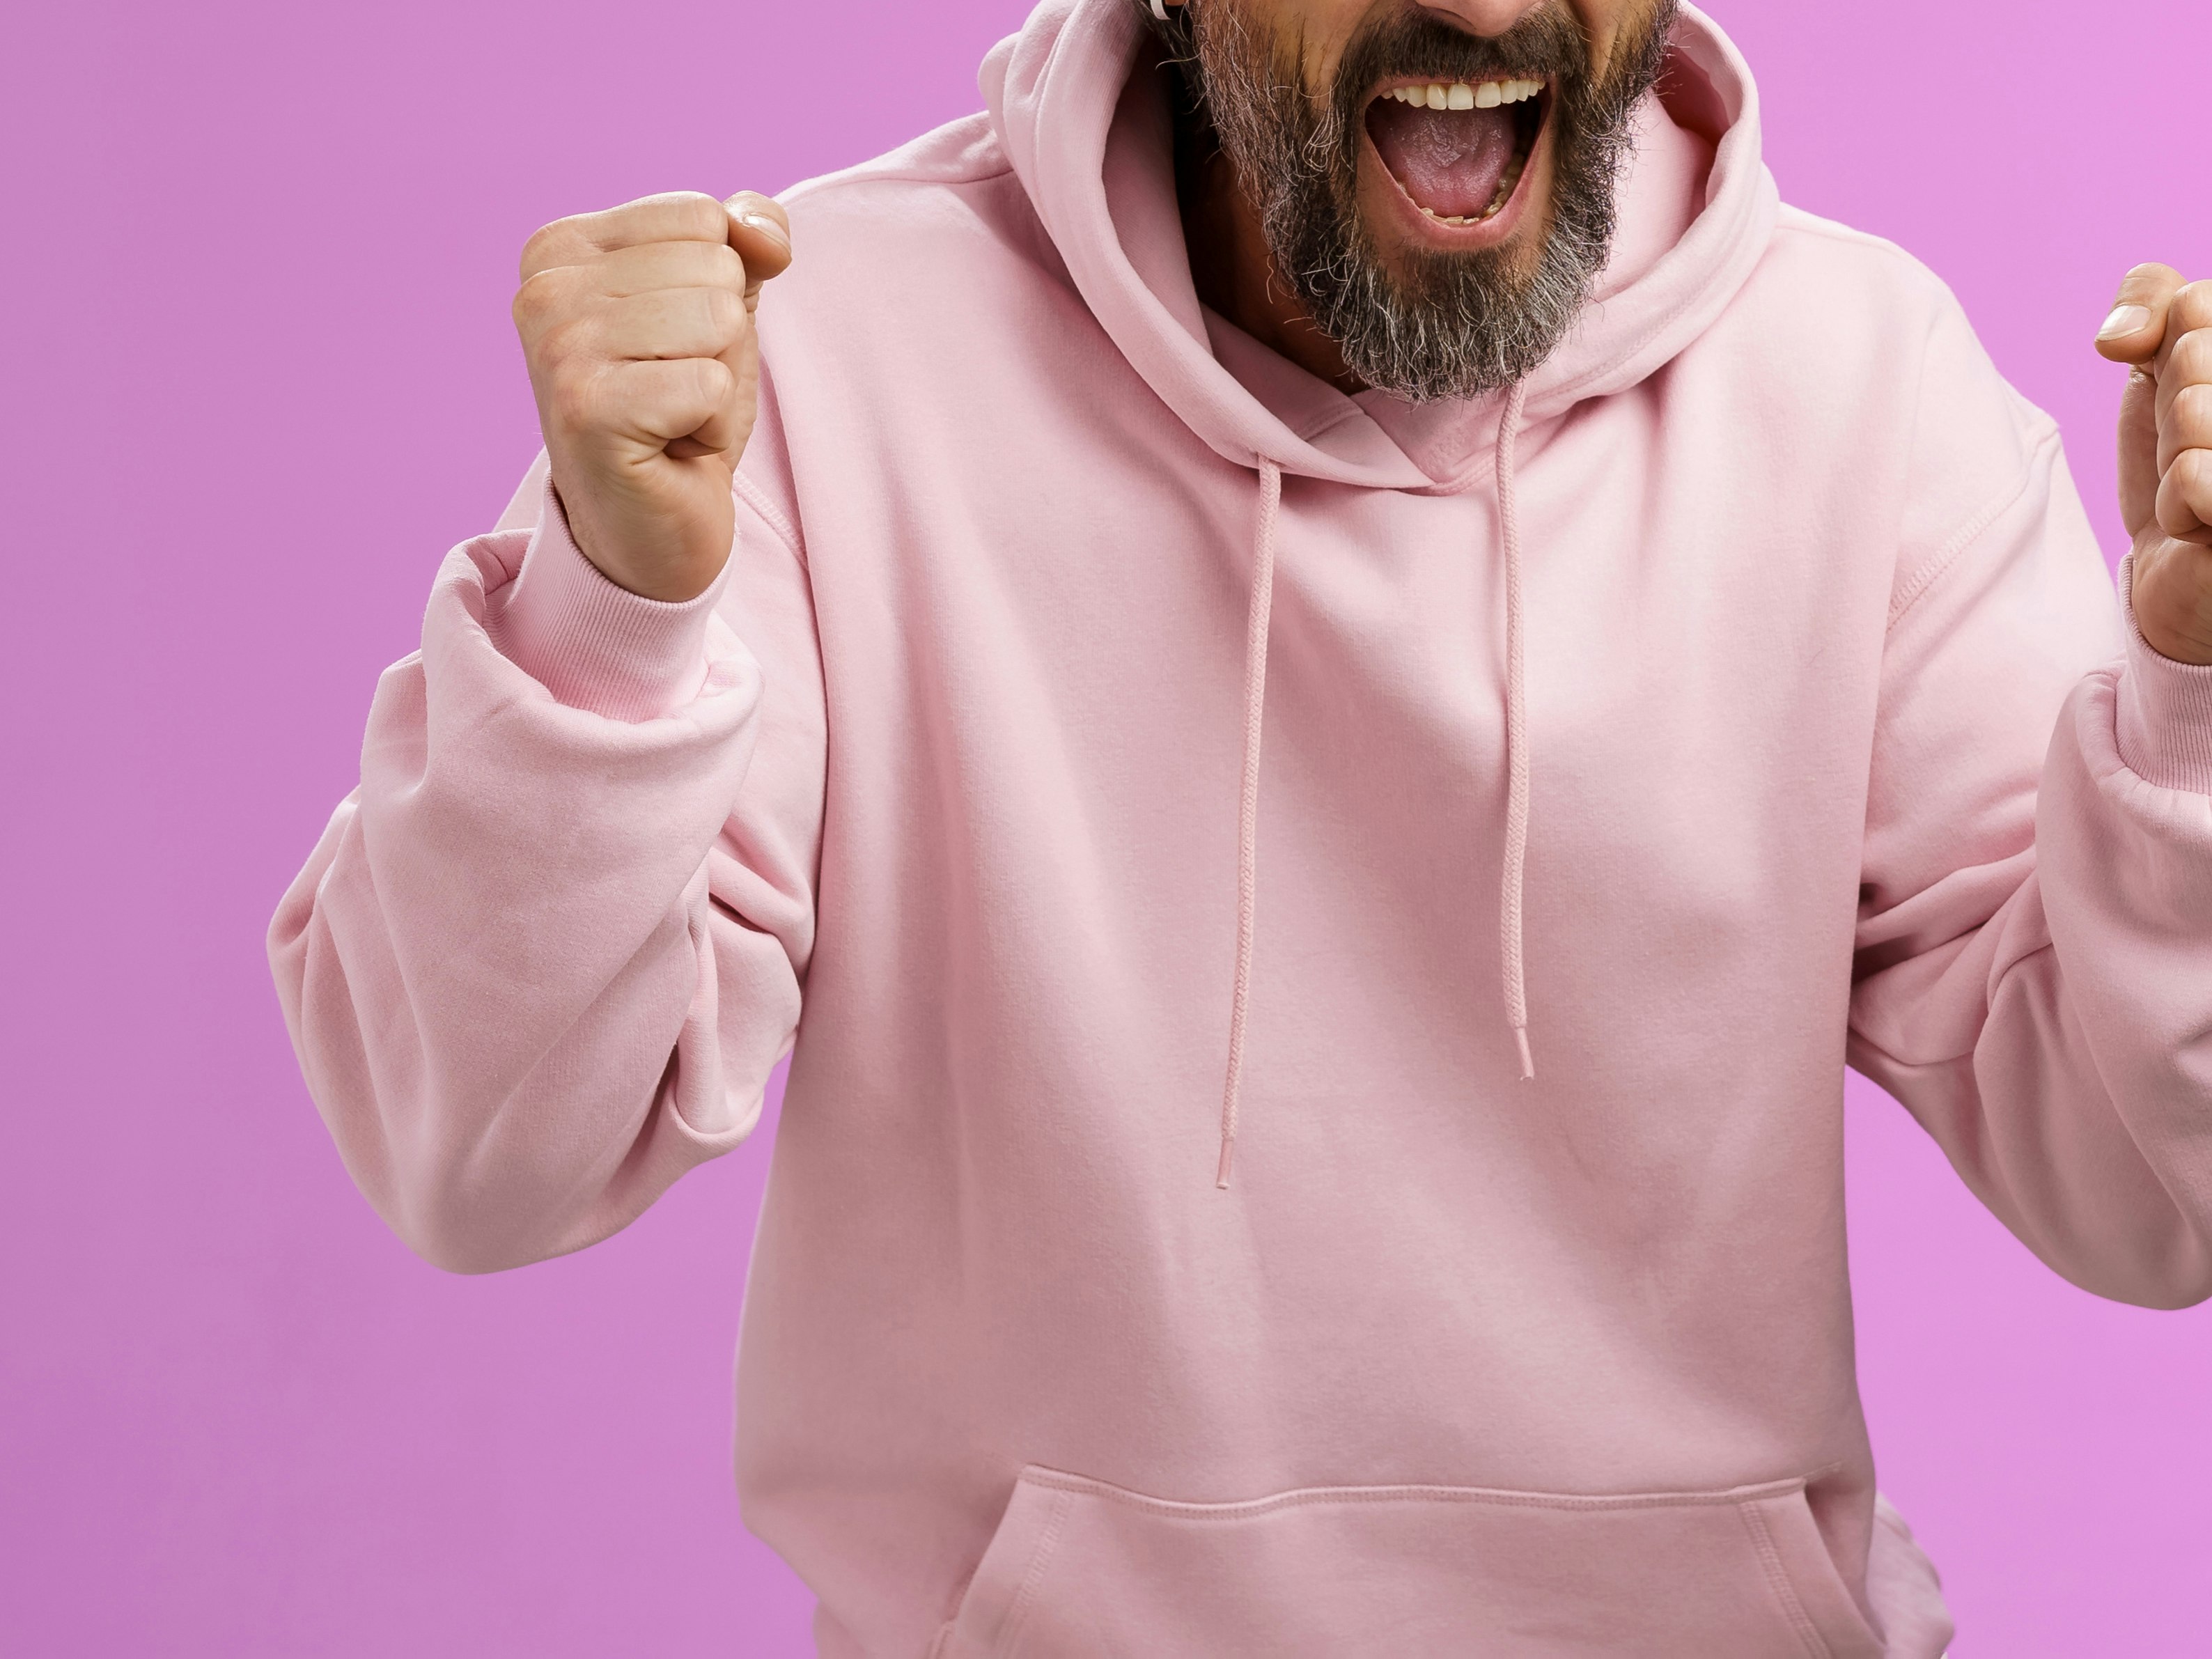 Illustrasjonsfoto, utsnitt av mann i rosa genser som jubler mot lilla bakgrunn